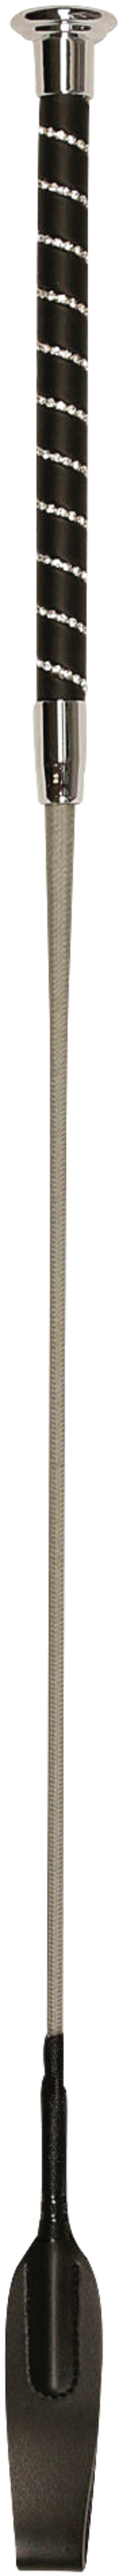 Springgerte mit Klatsche 65 cm, silber